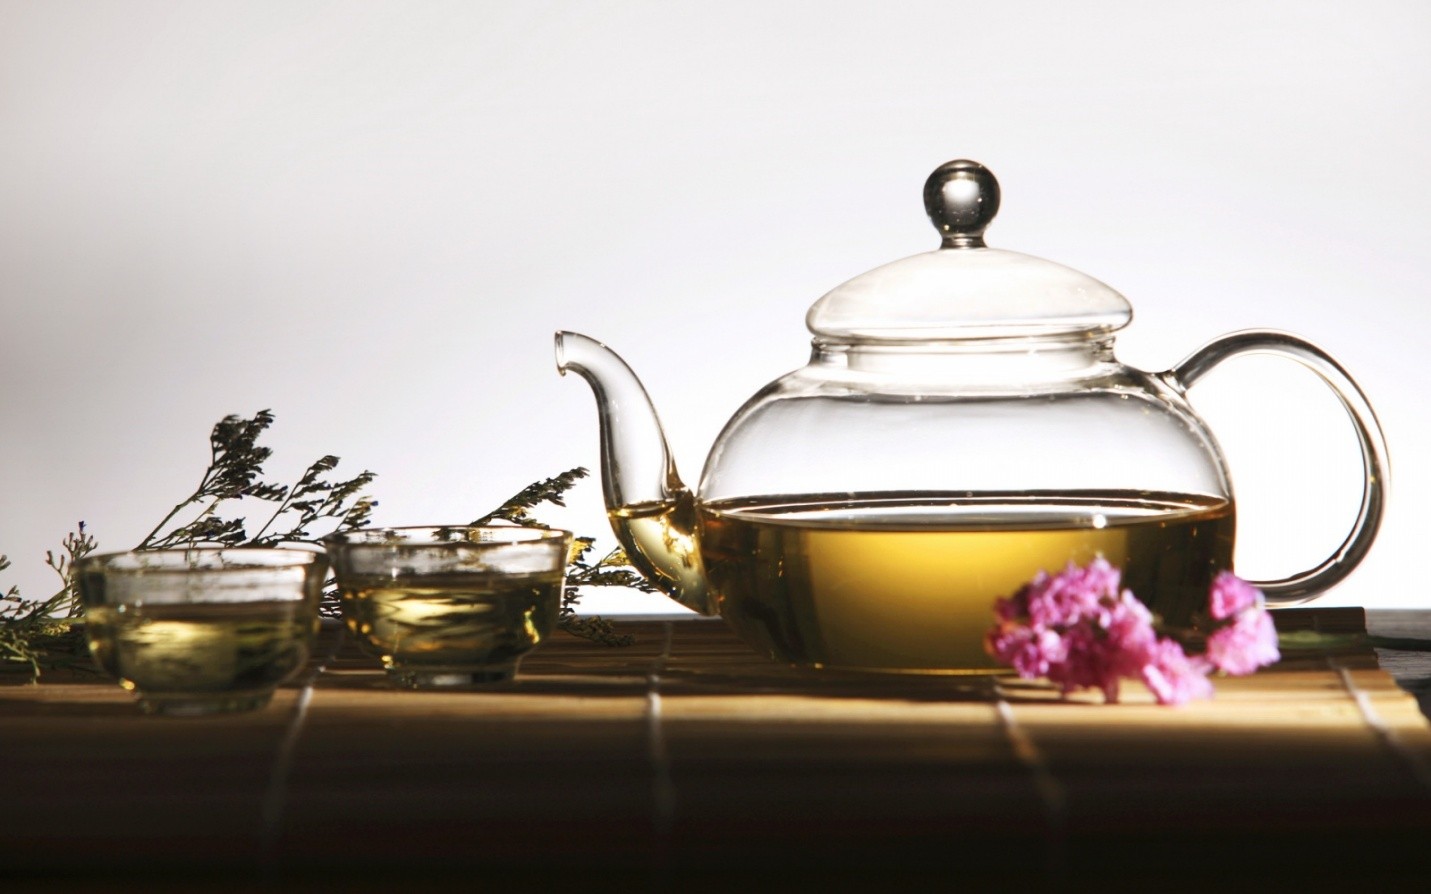 Зелёный и черный иван-чай: польза и отличия